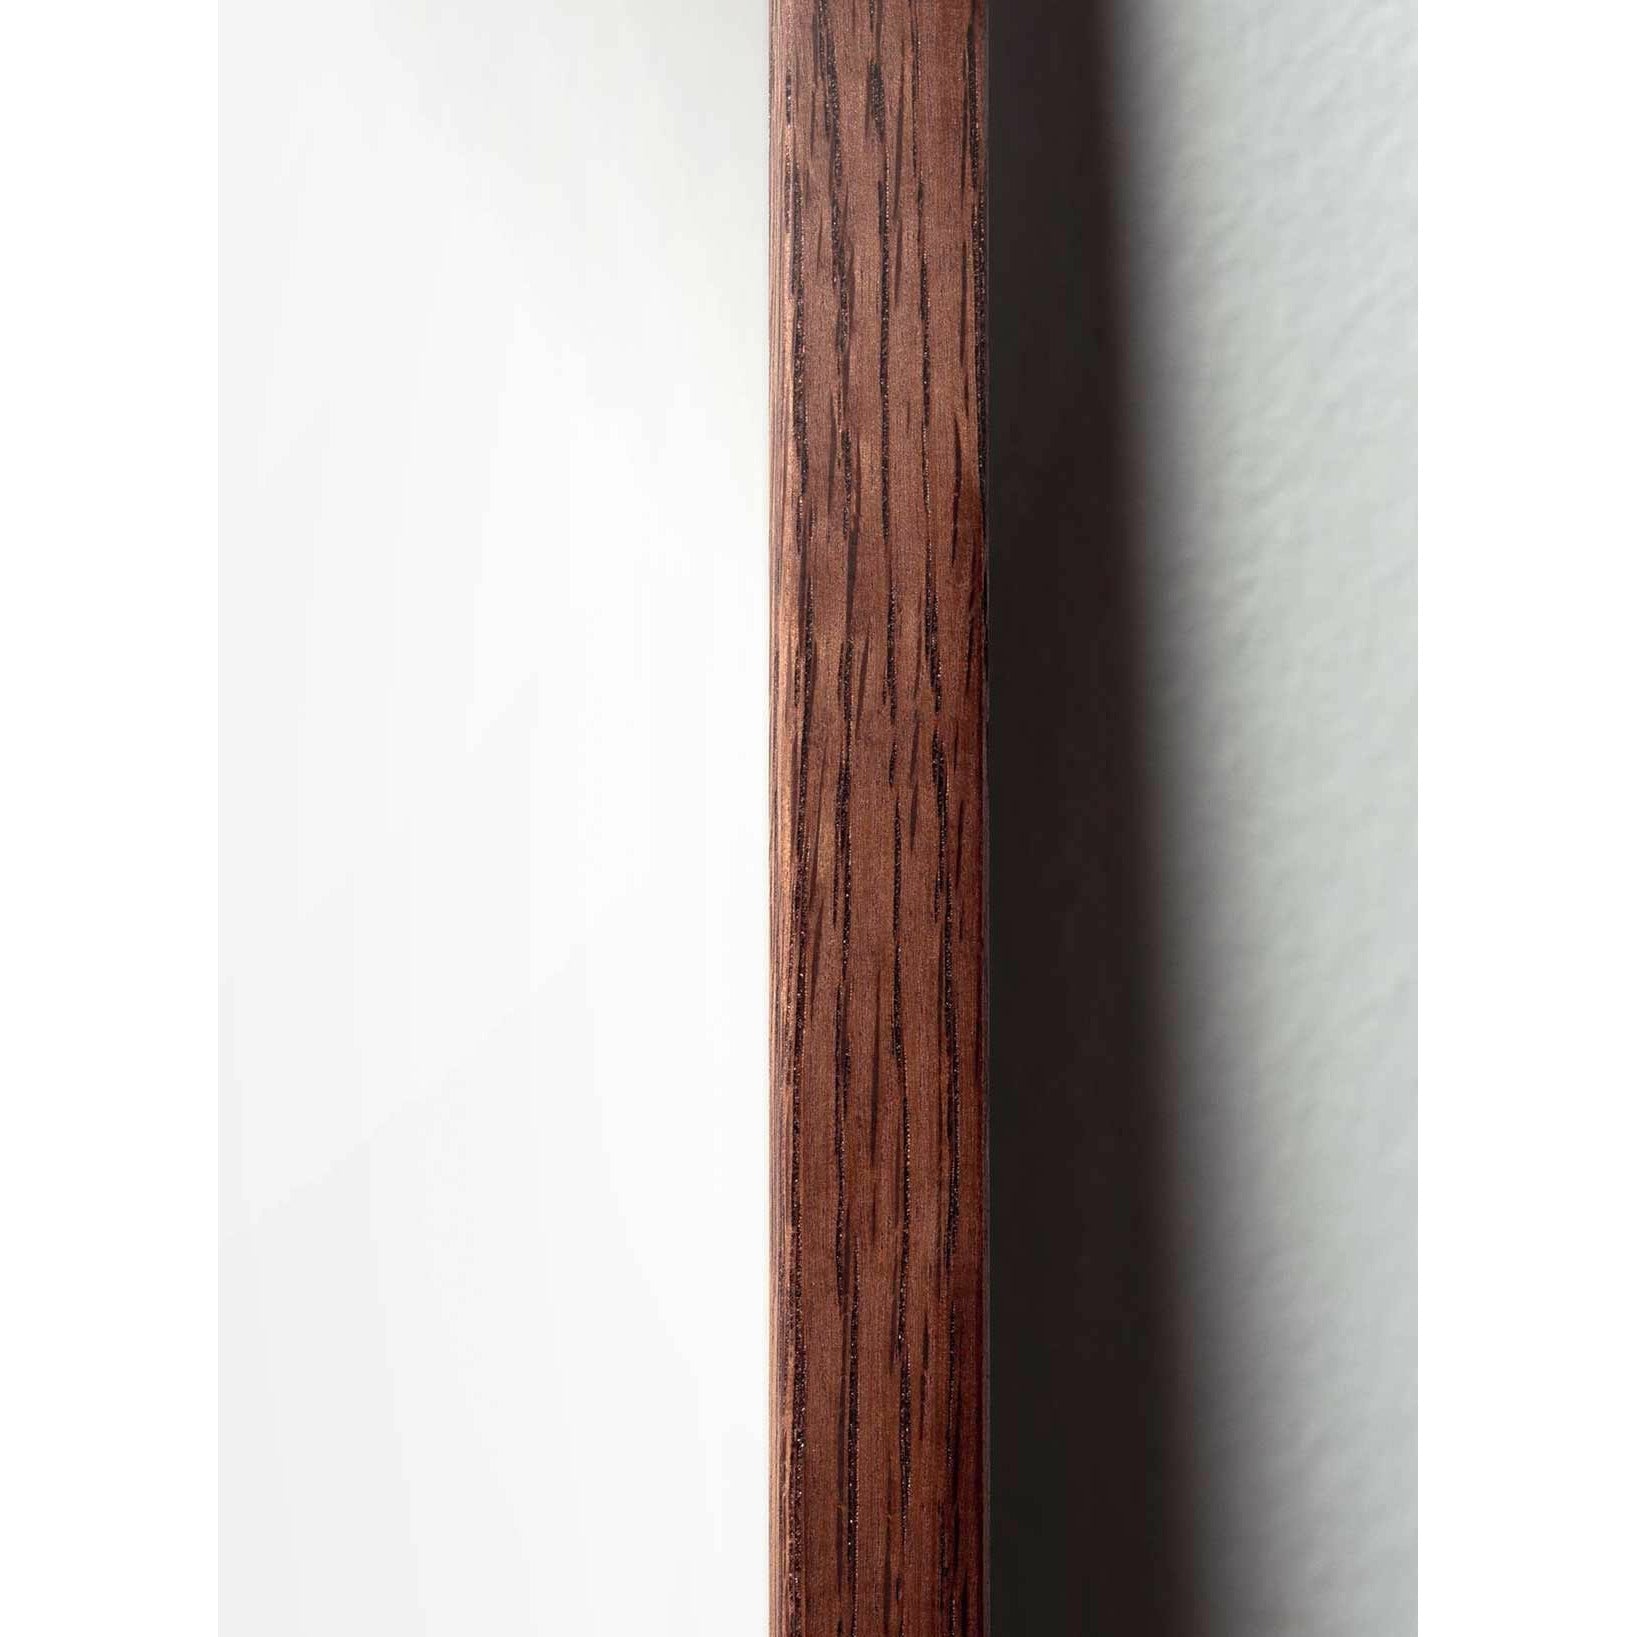 Póster clásico de Swan, marco de madera oscura A5, fondo blanco/blanco